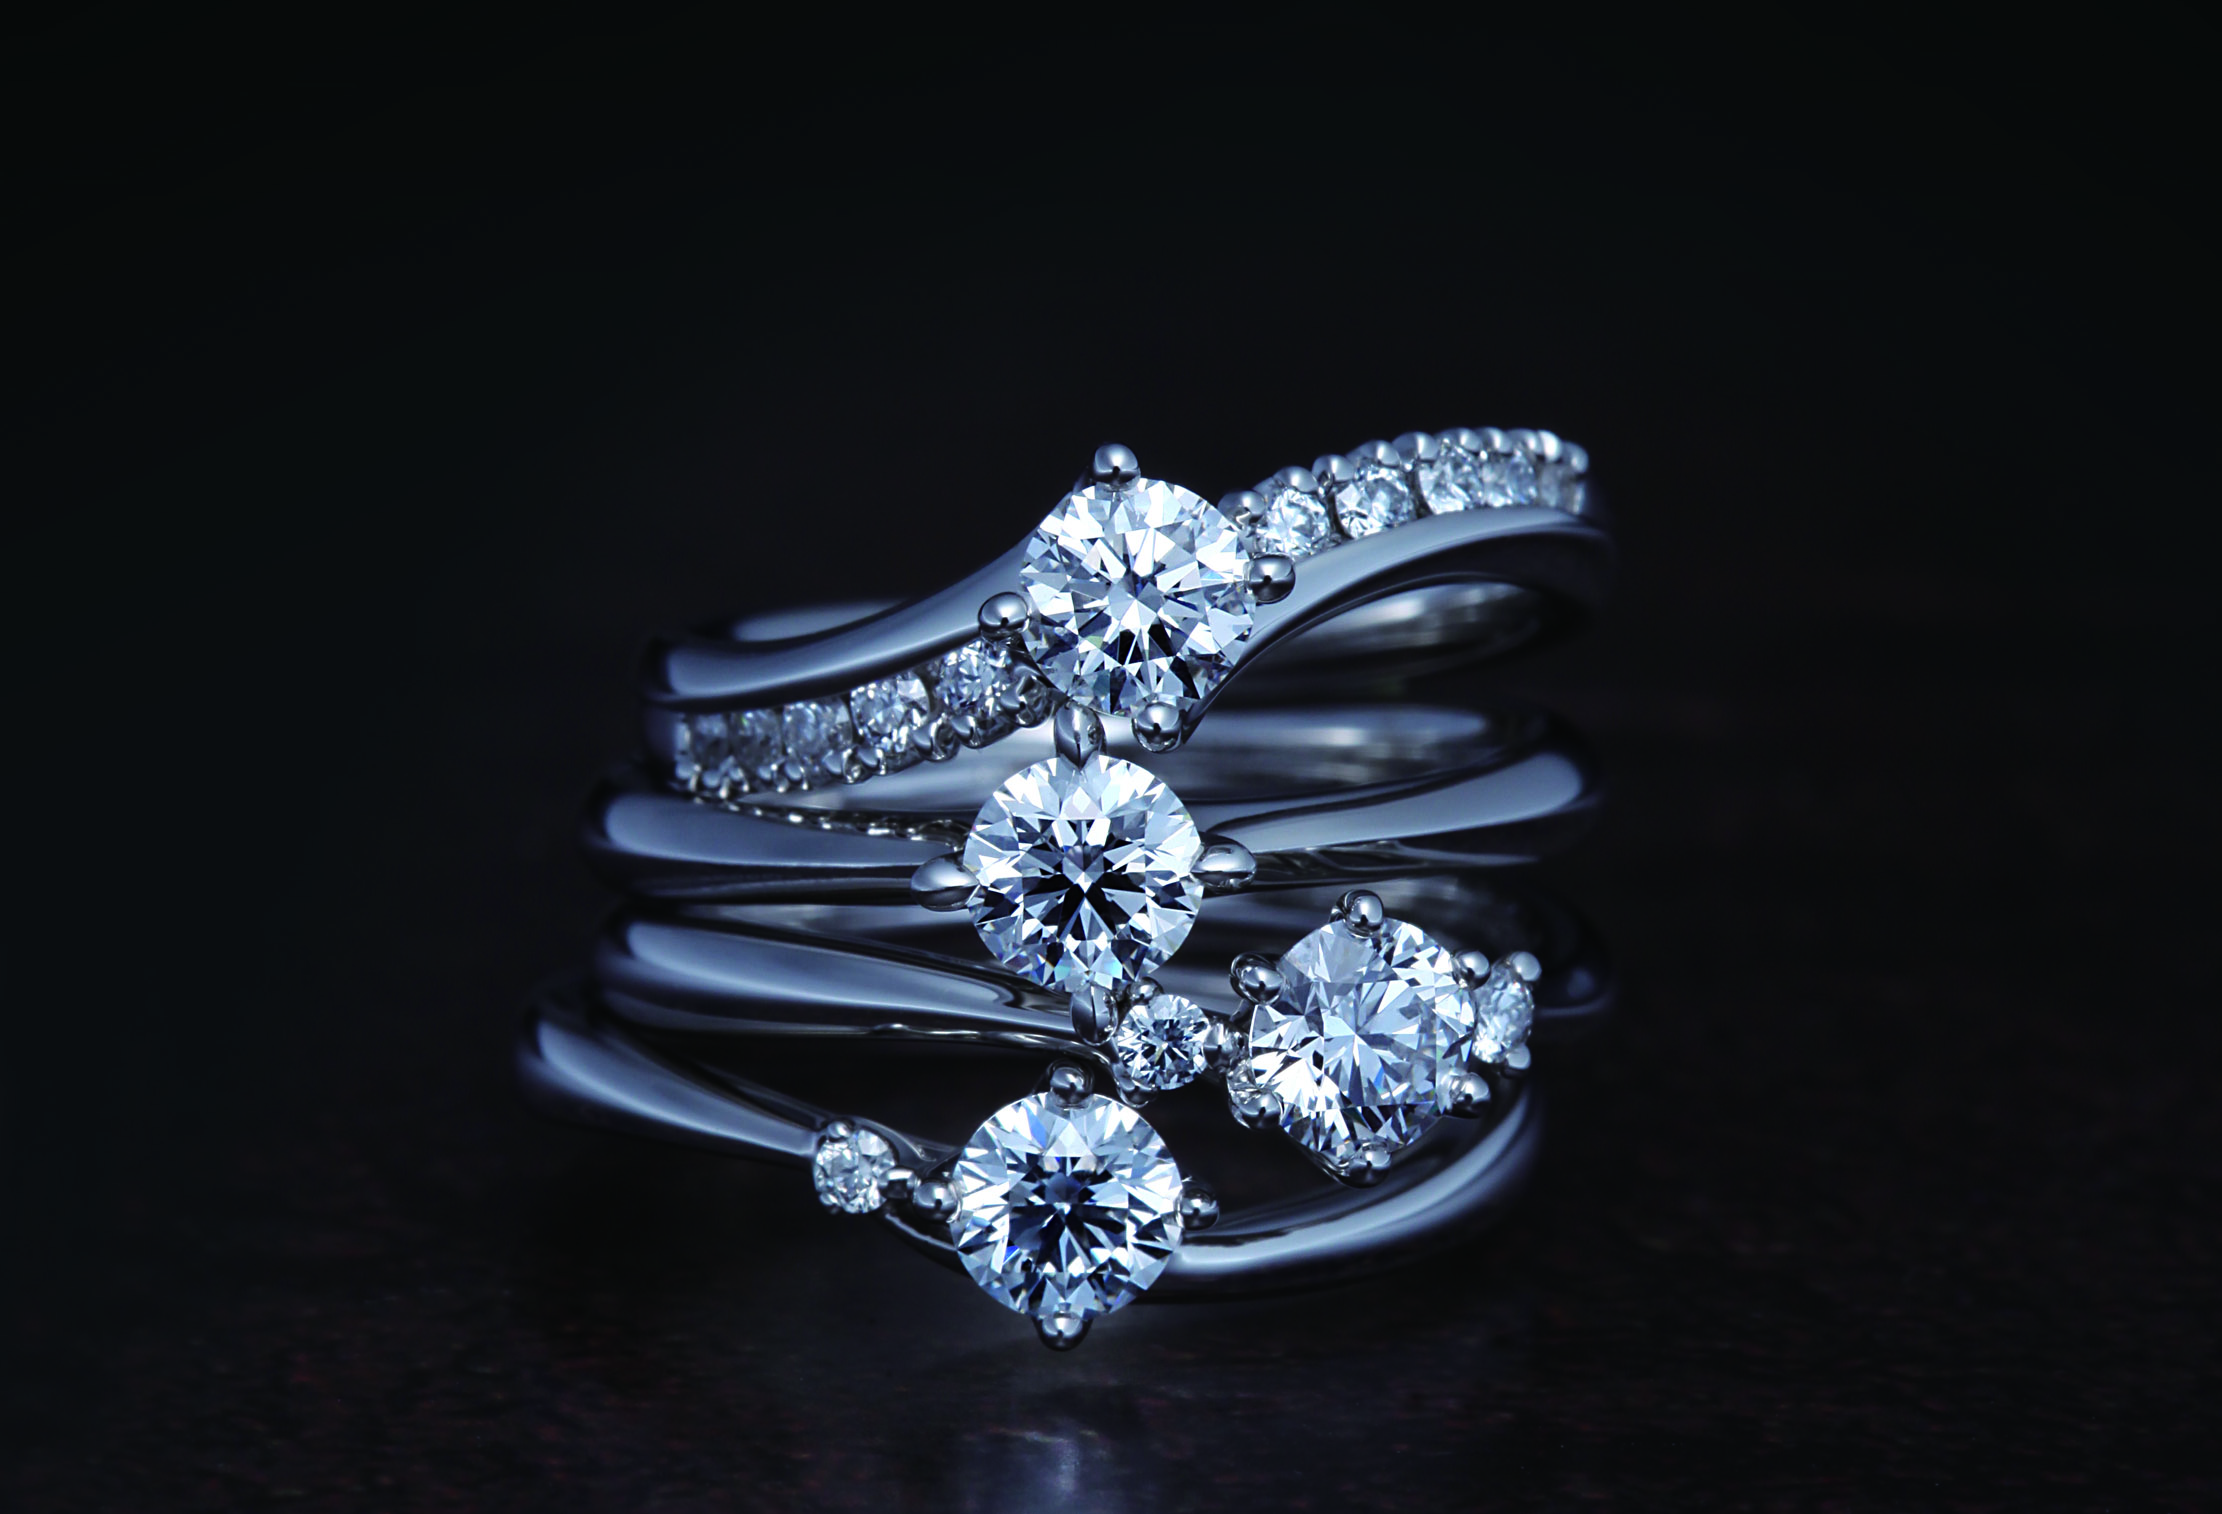 【静岡市】生涯の輝きが始まる瞬間に。『COLANY コラニー』の婚約指輪